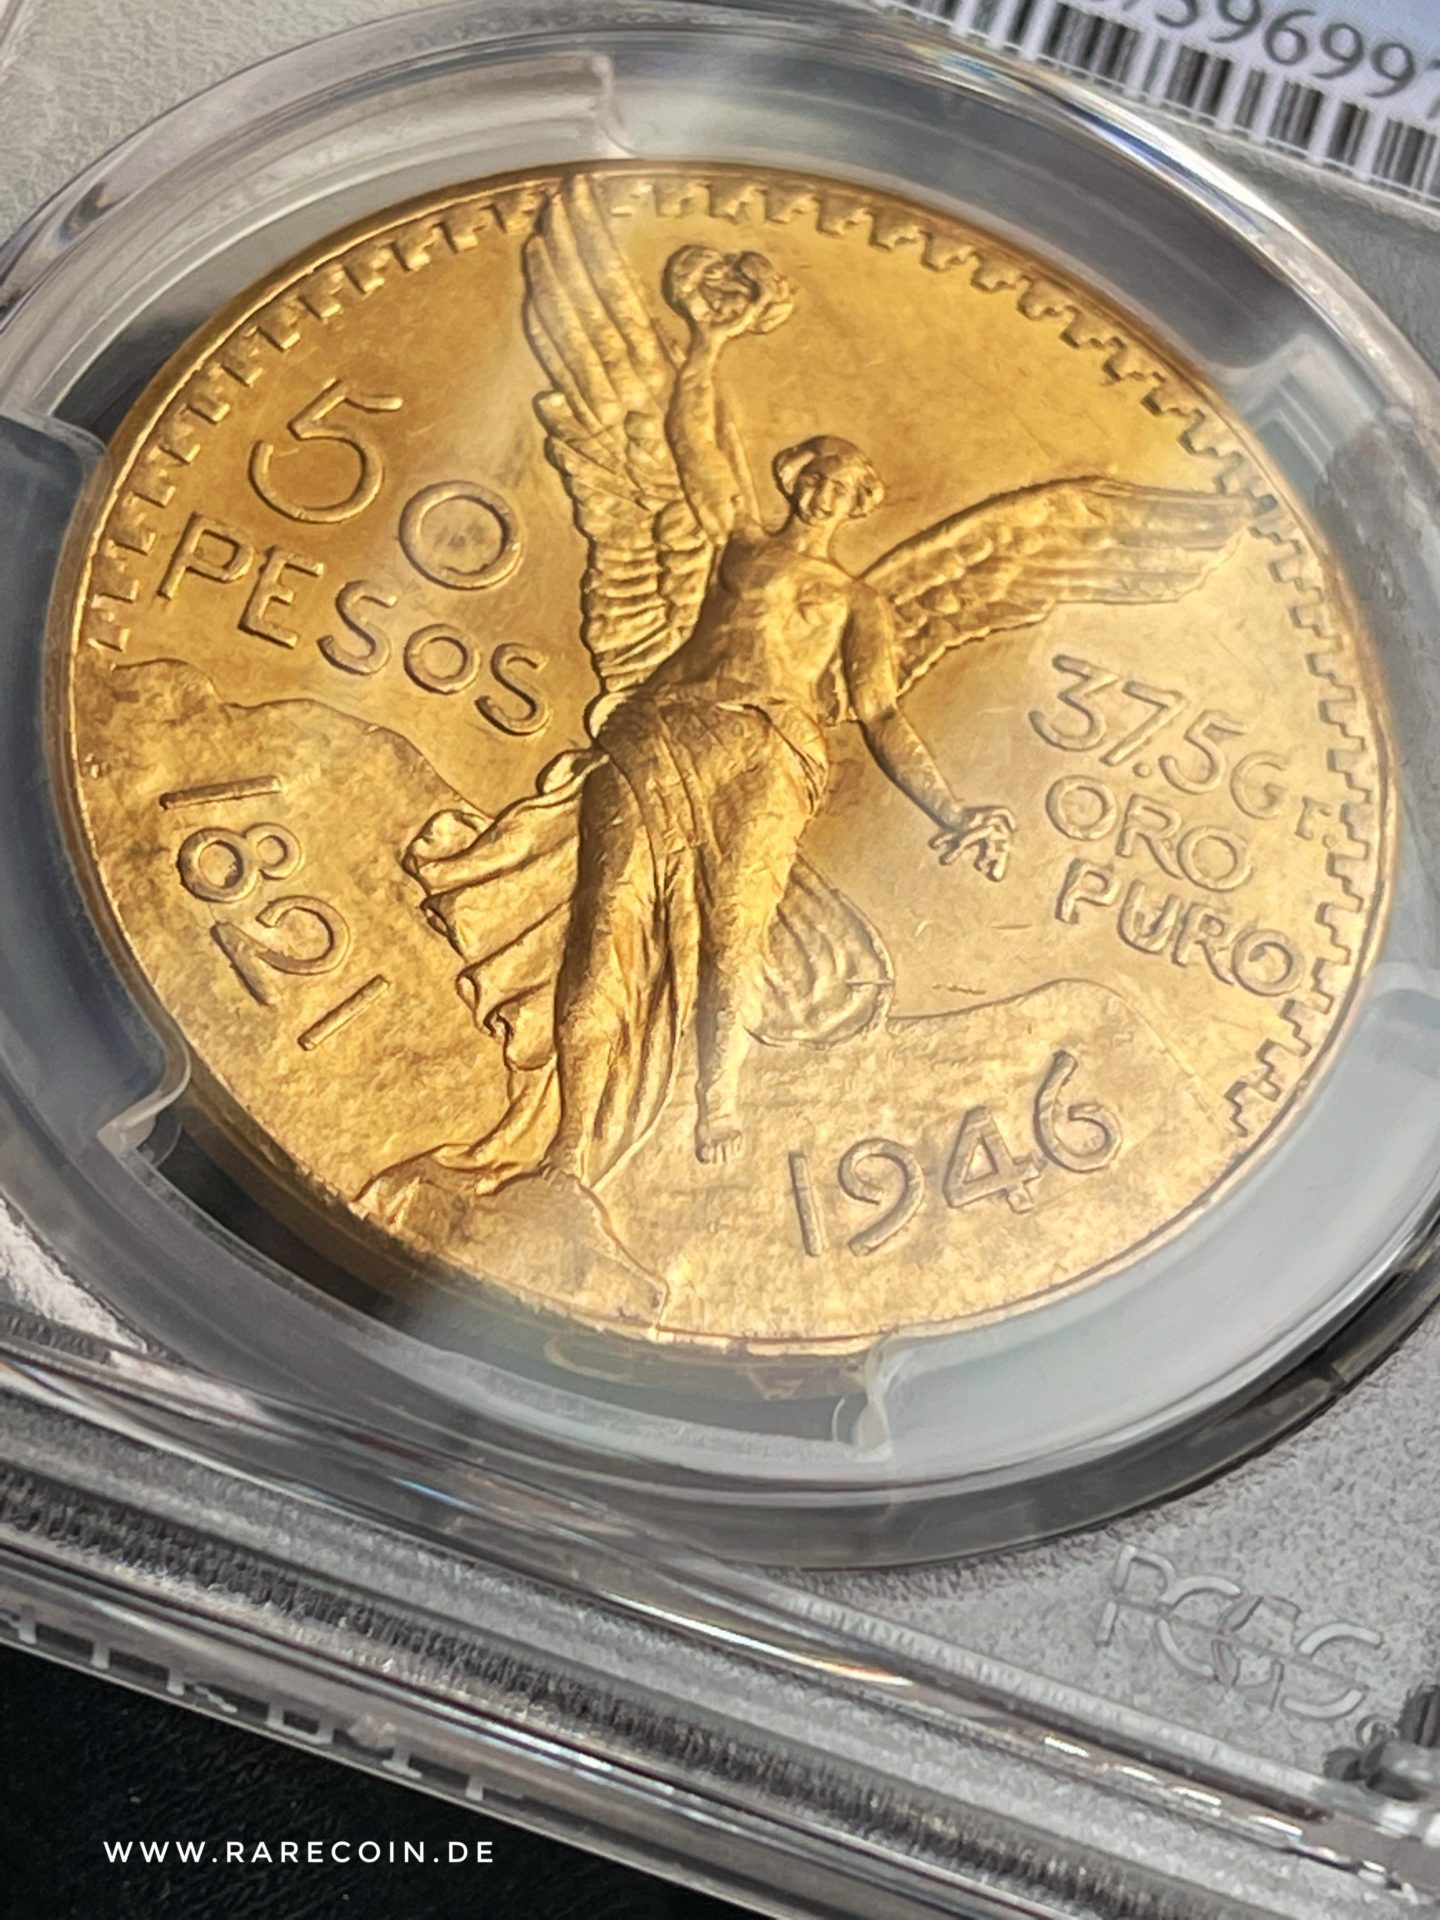 50 pesos 1946 centenario oro